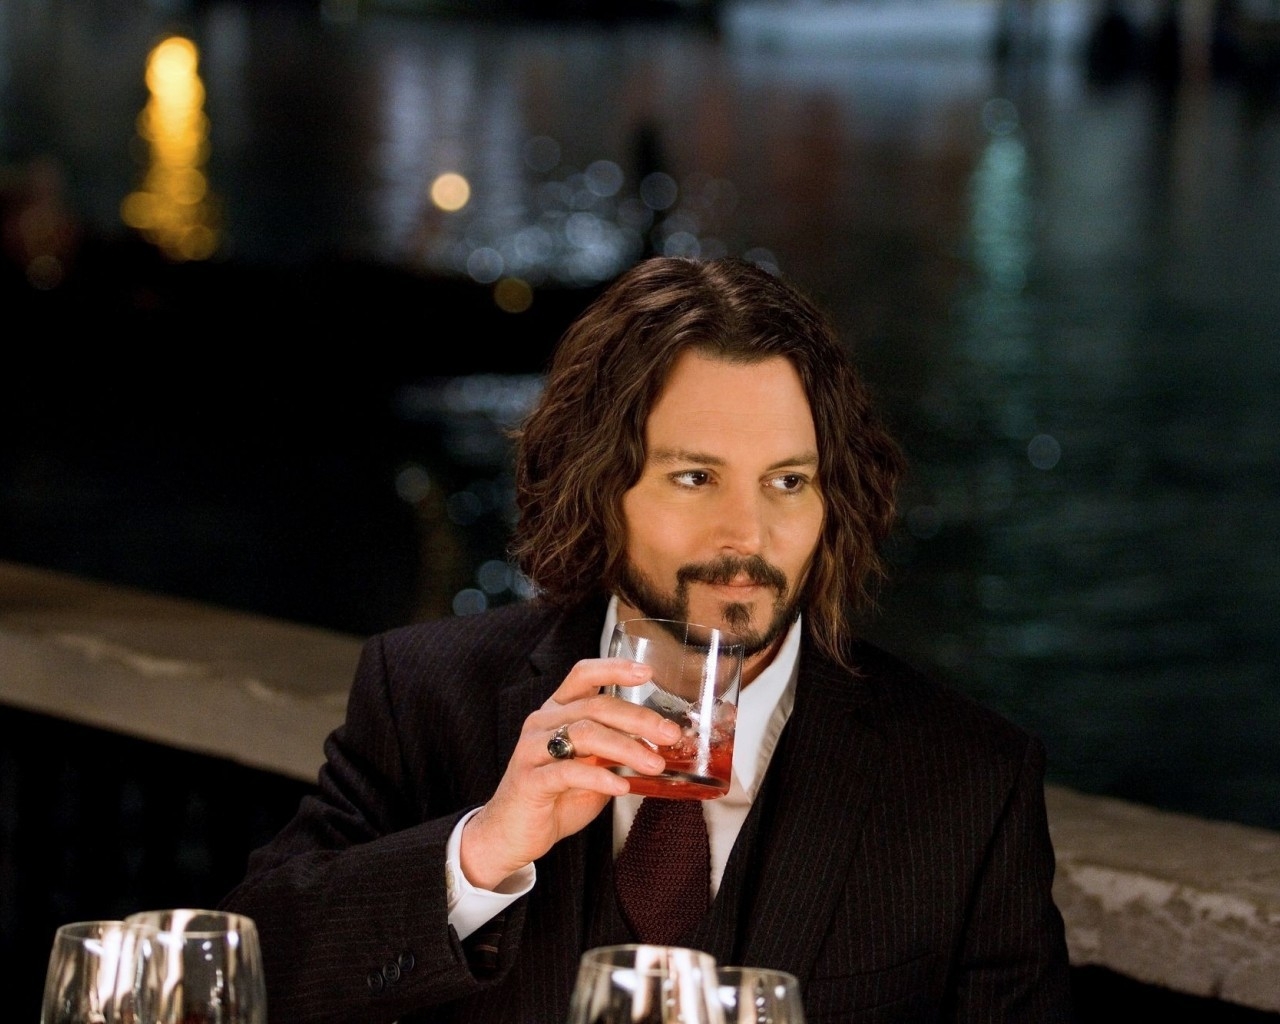 Johnny Depp Drinking for 1280 x 1024 resolution